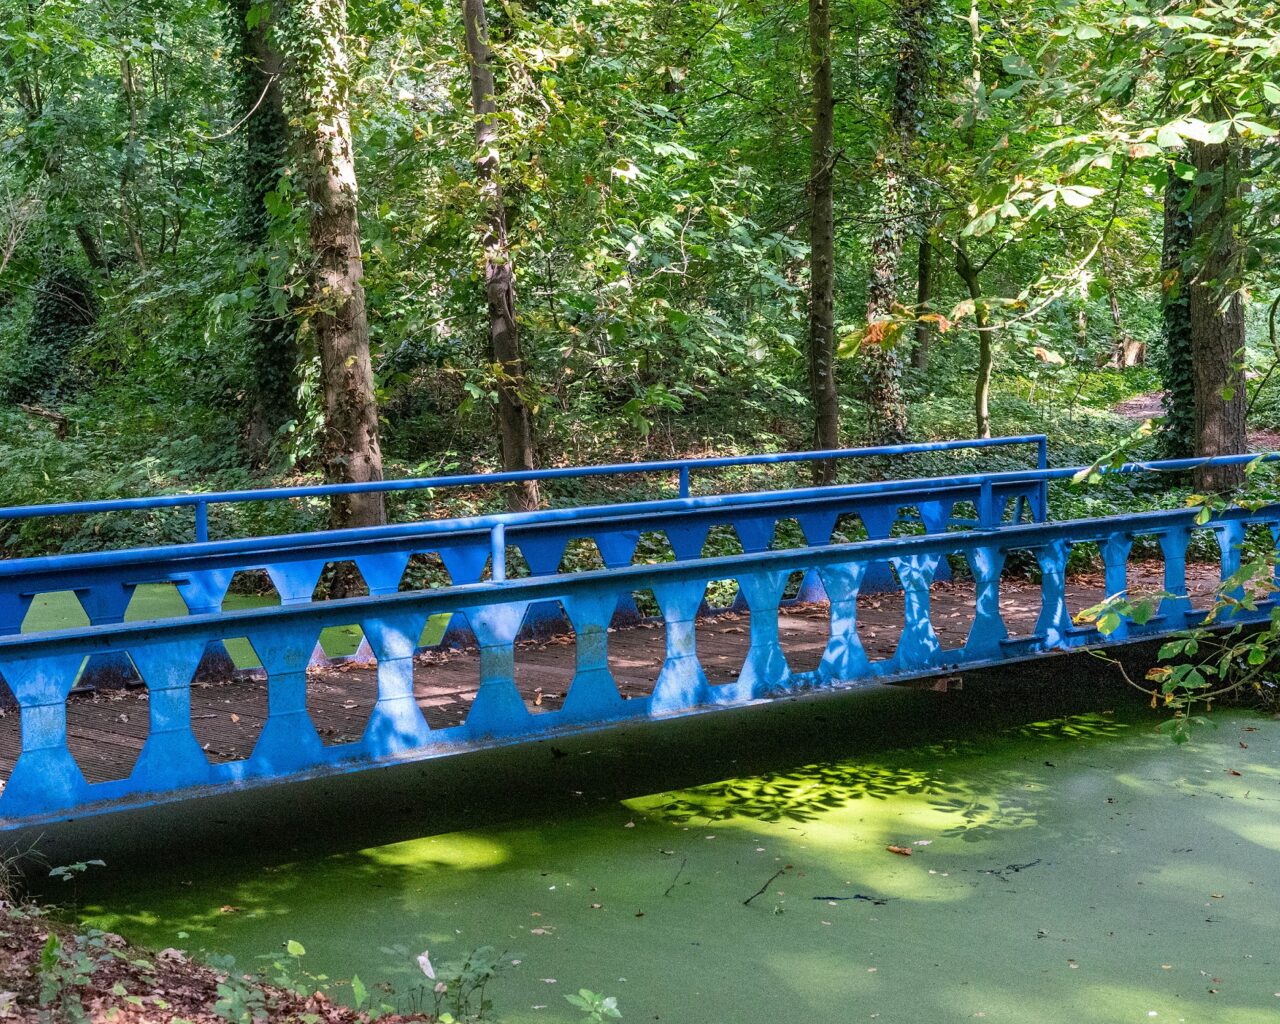 Blauwe-brug-in-poort-van-heusden